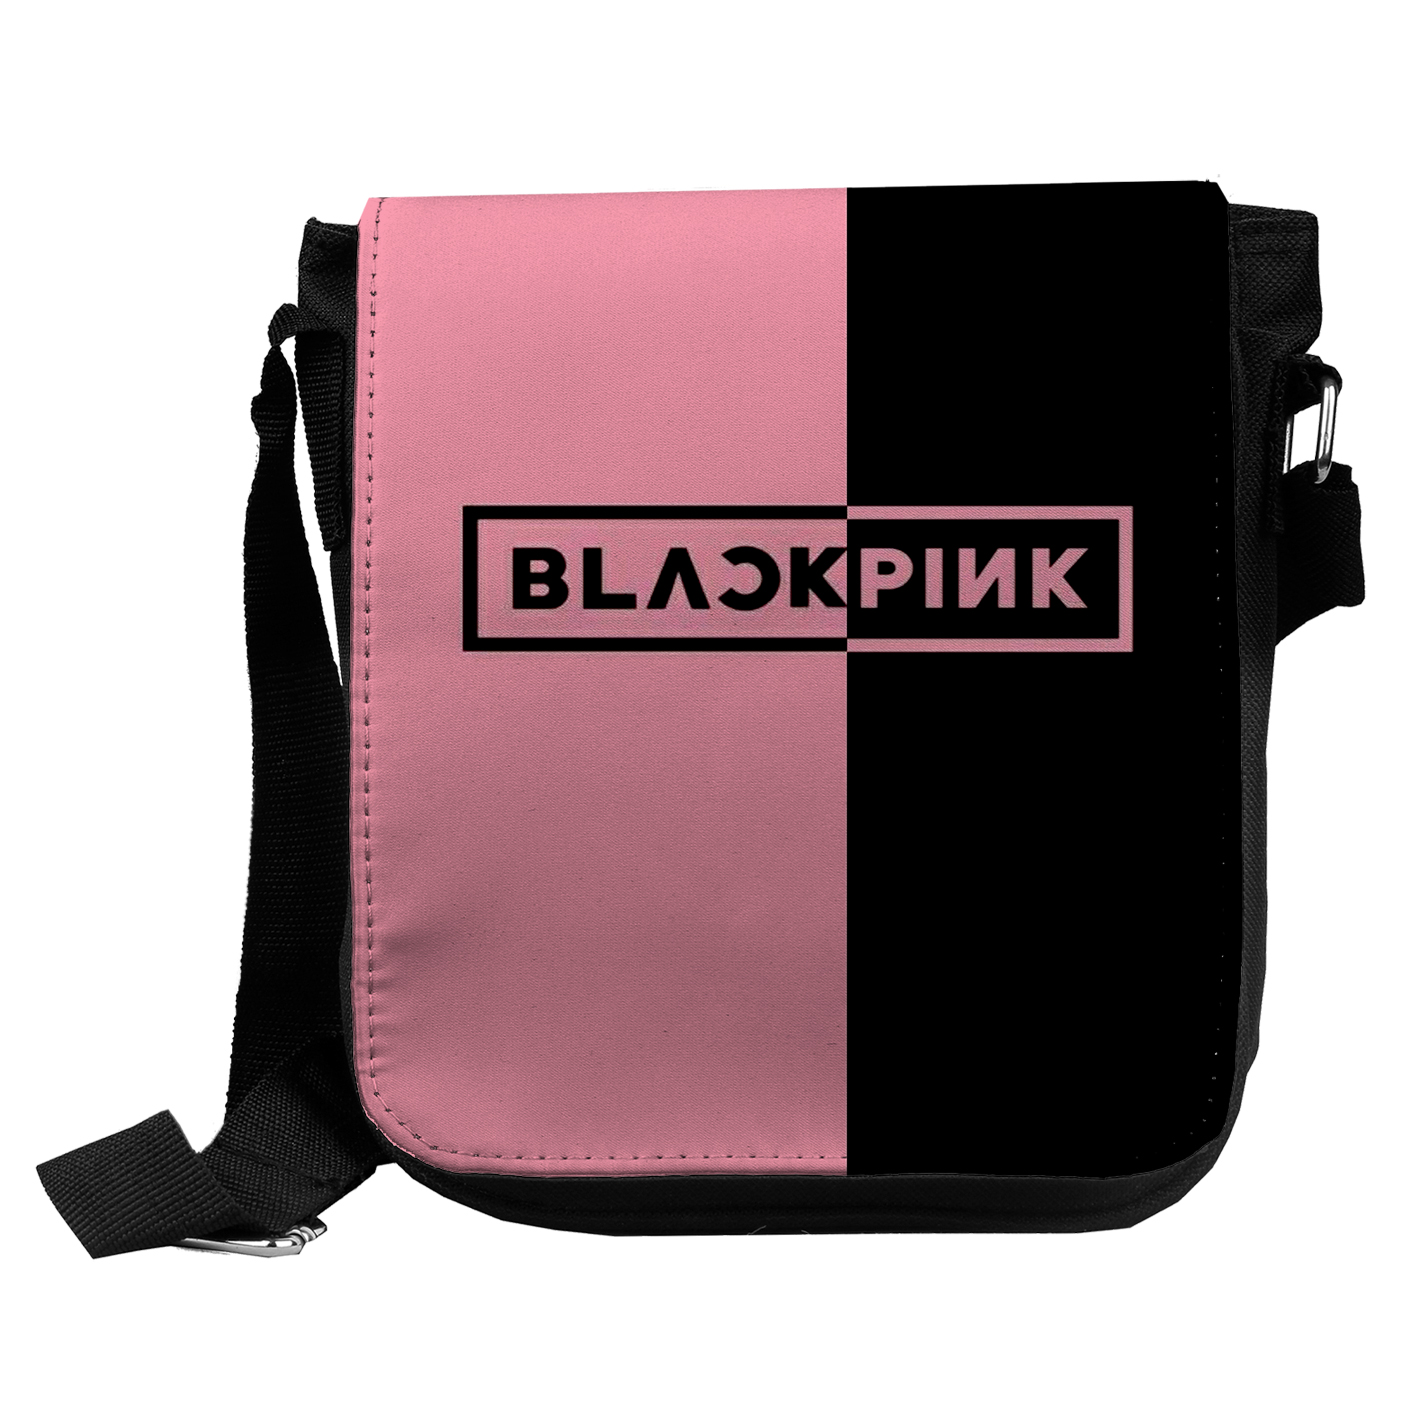 کیف رودوشی دخترانه طرح black pink کد kd296